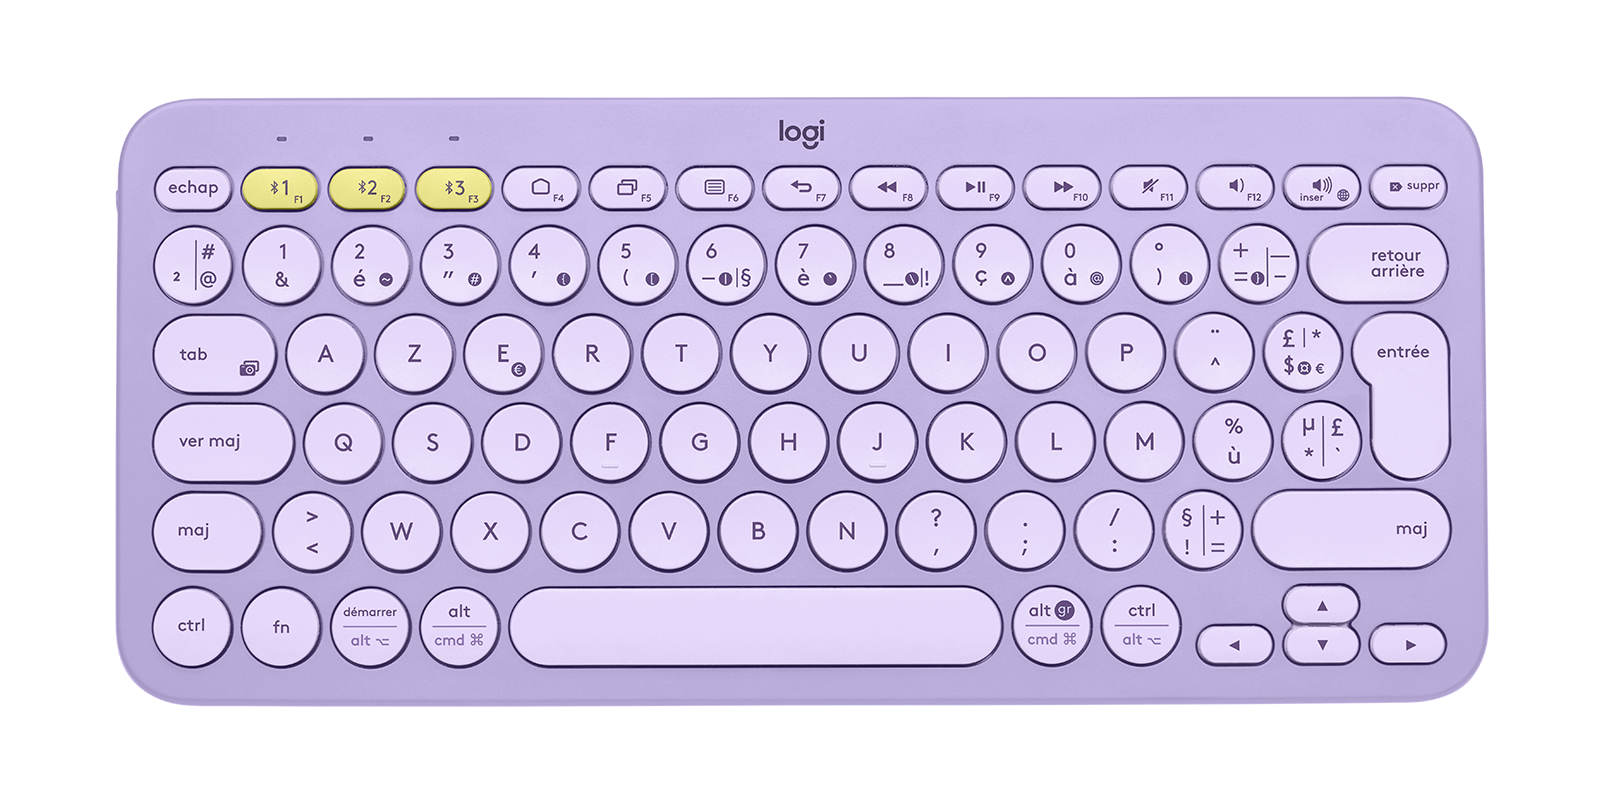 logitech keyboard k380